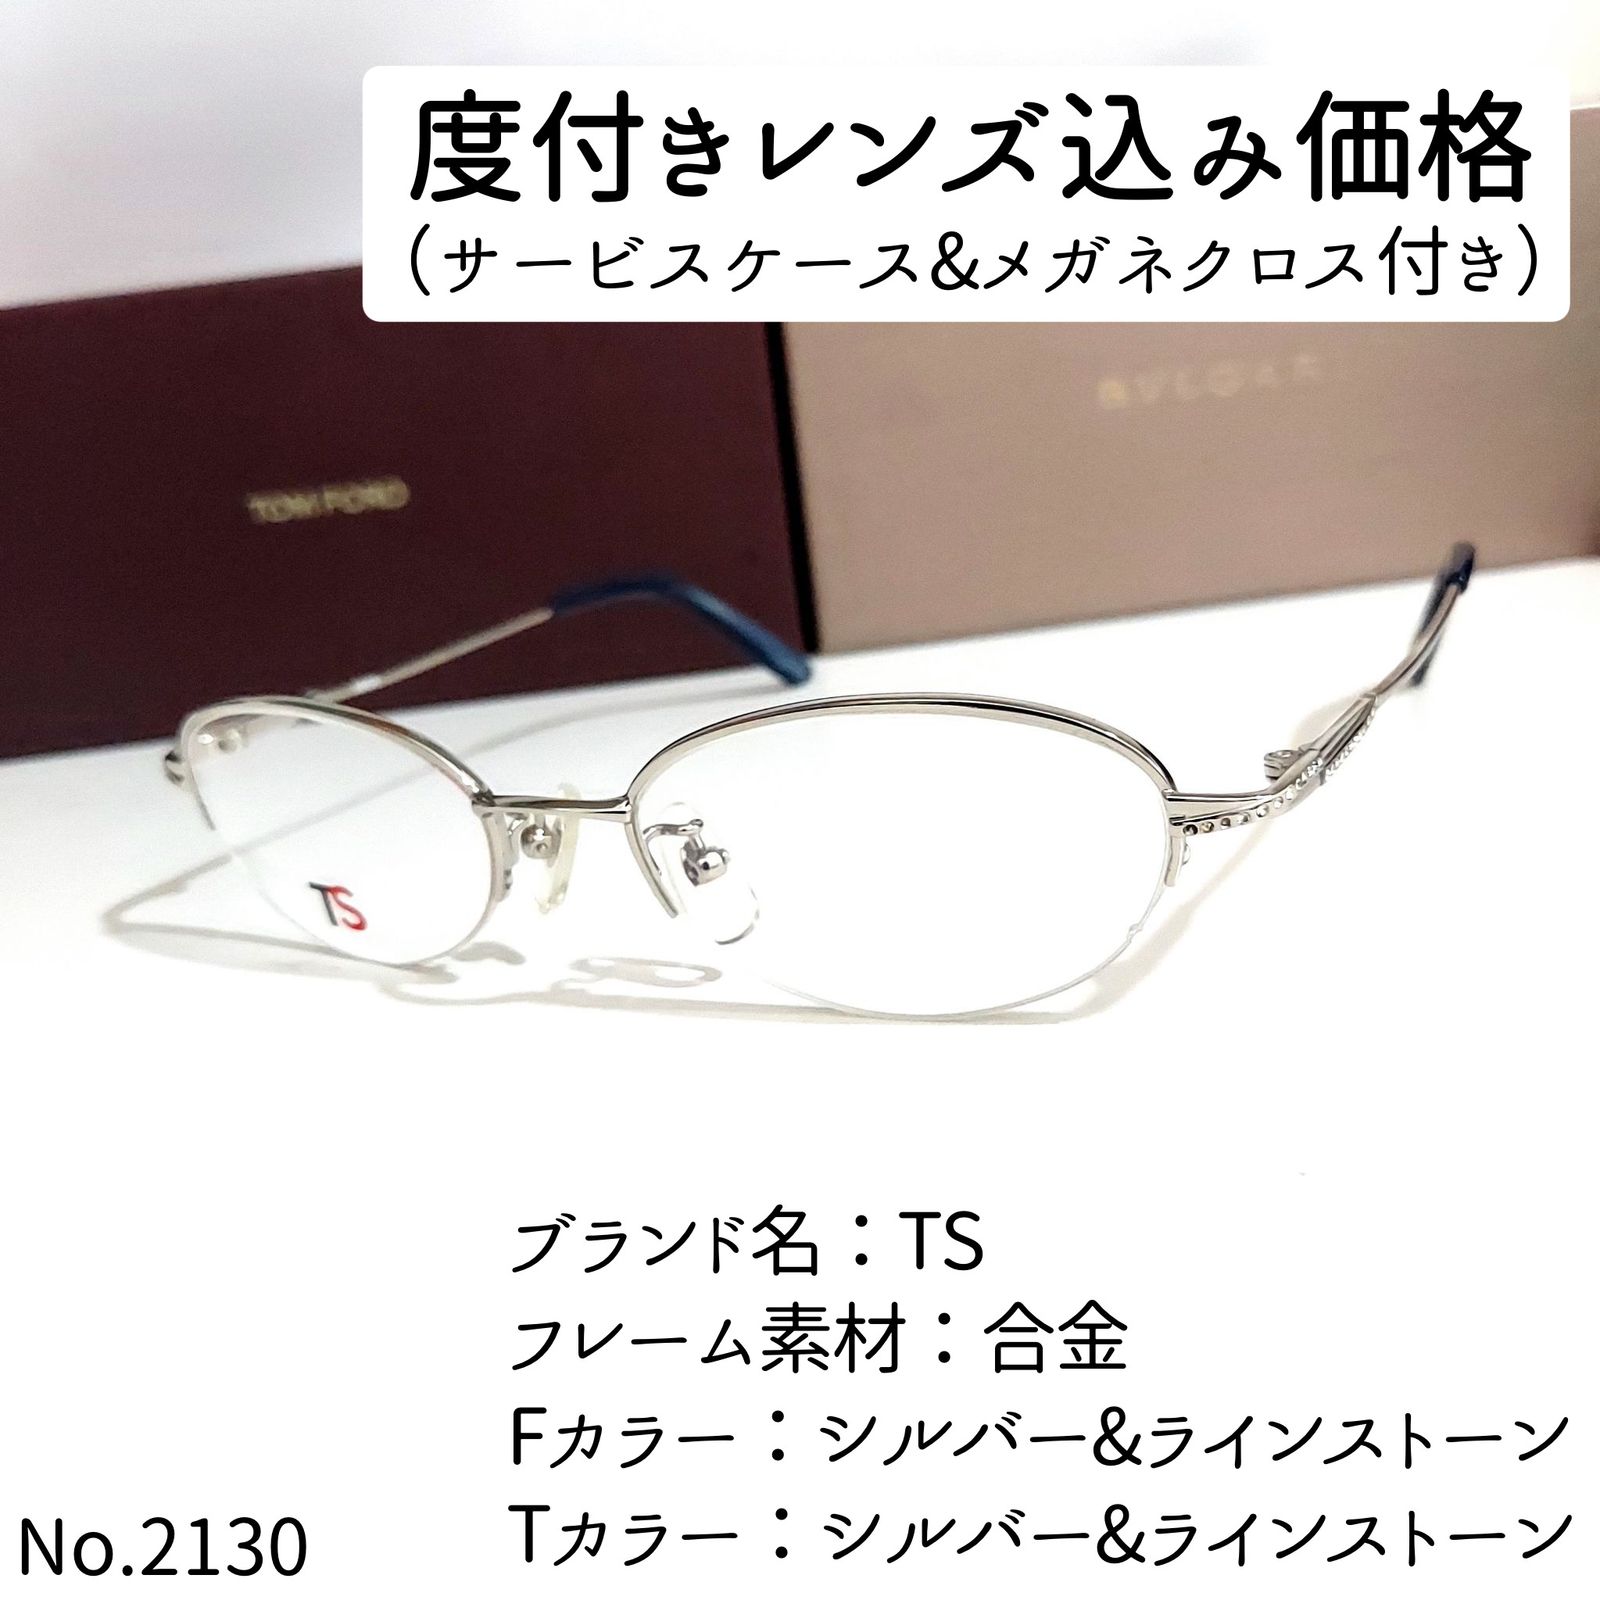 No.2130メガネ TS【度数入り込み価格】-